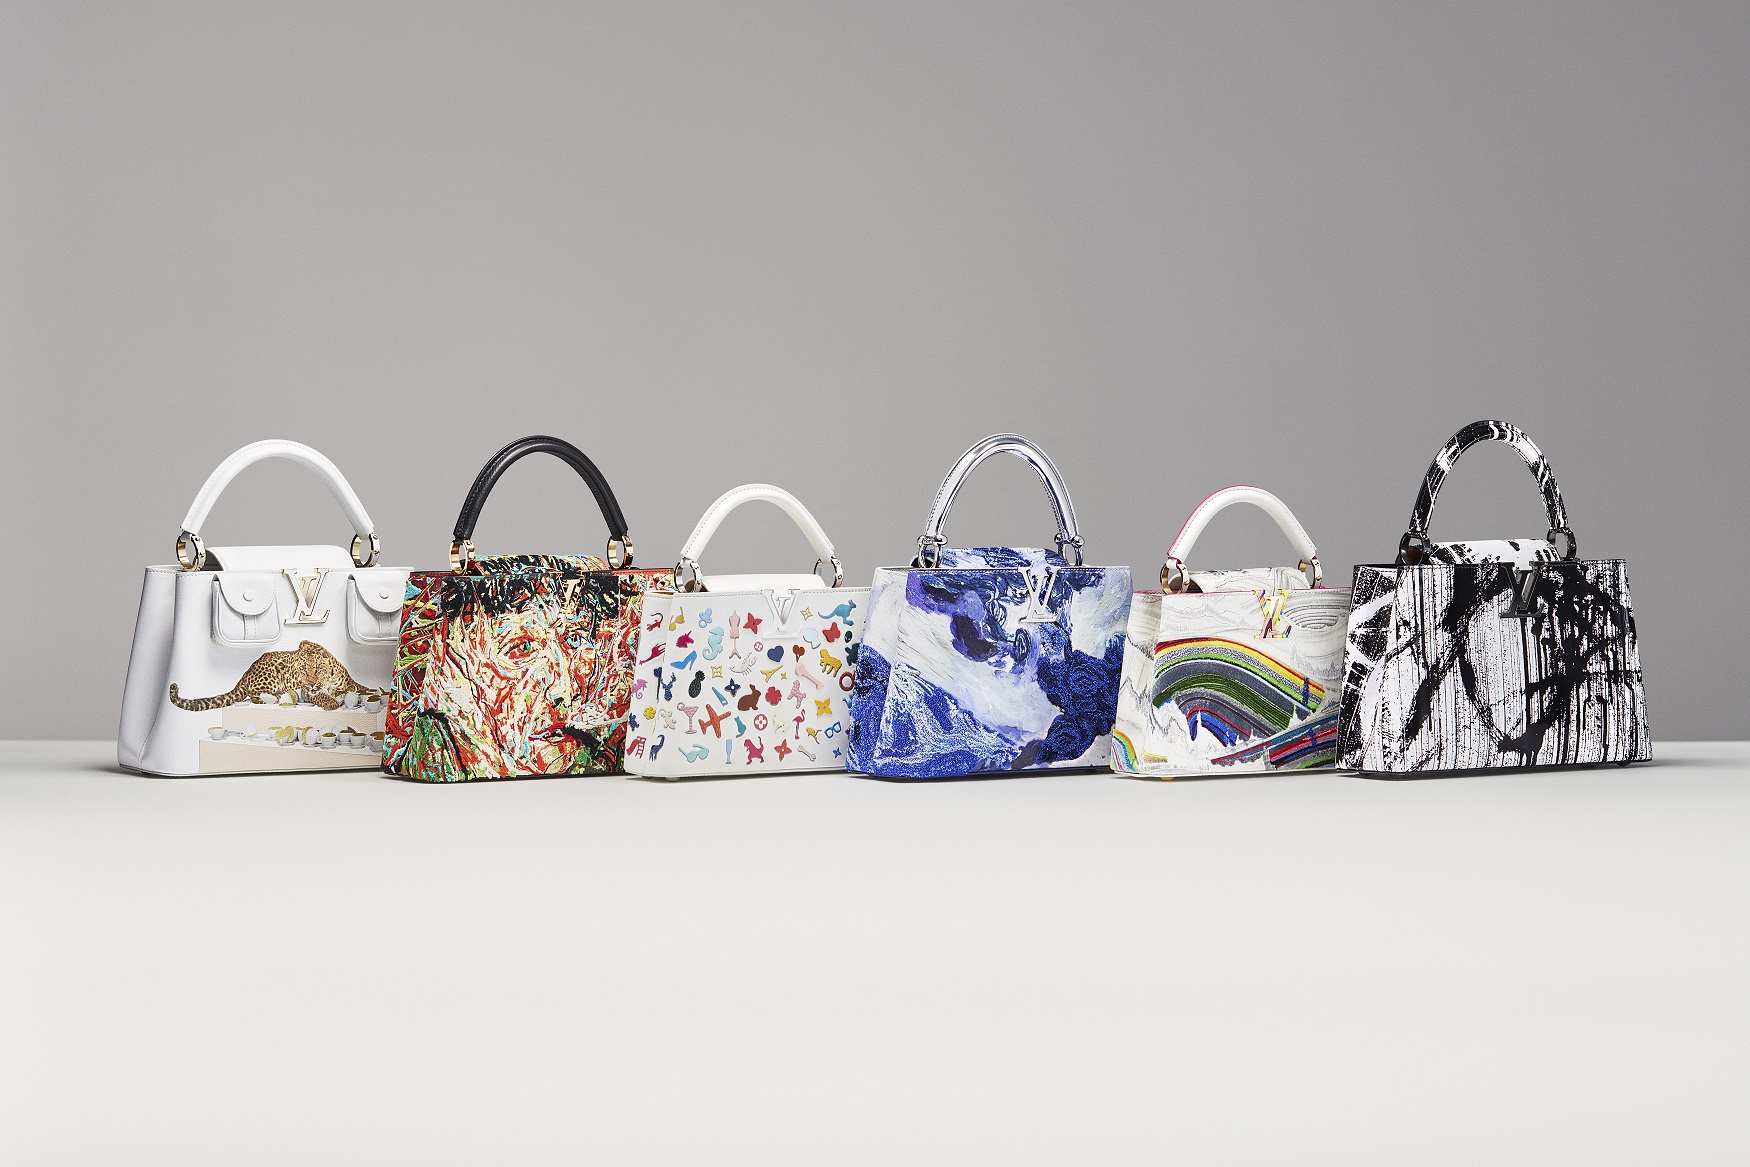 Artycapucines di Louis Vuitton, sei nuovi artisti contemporanei di fama internazionale per l’iconica borsa Capucines